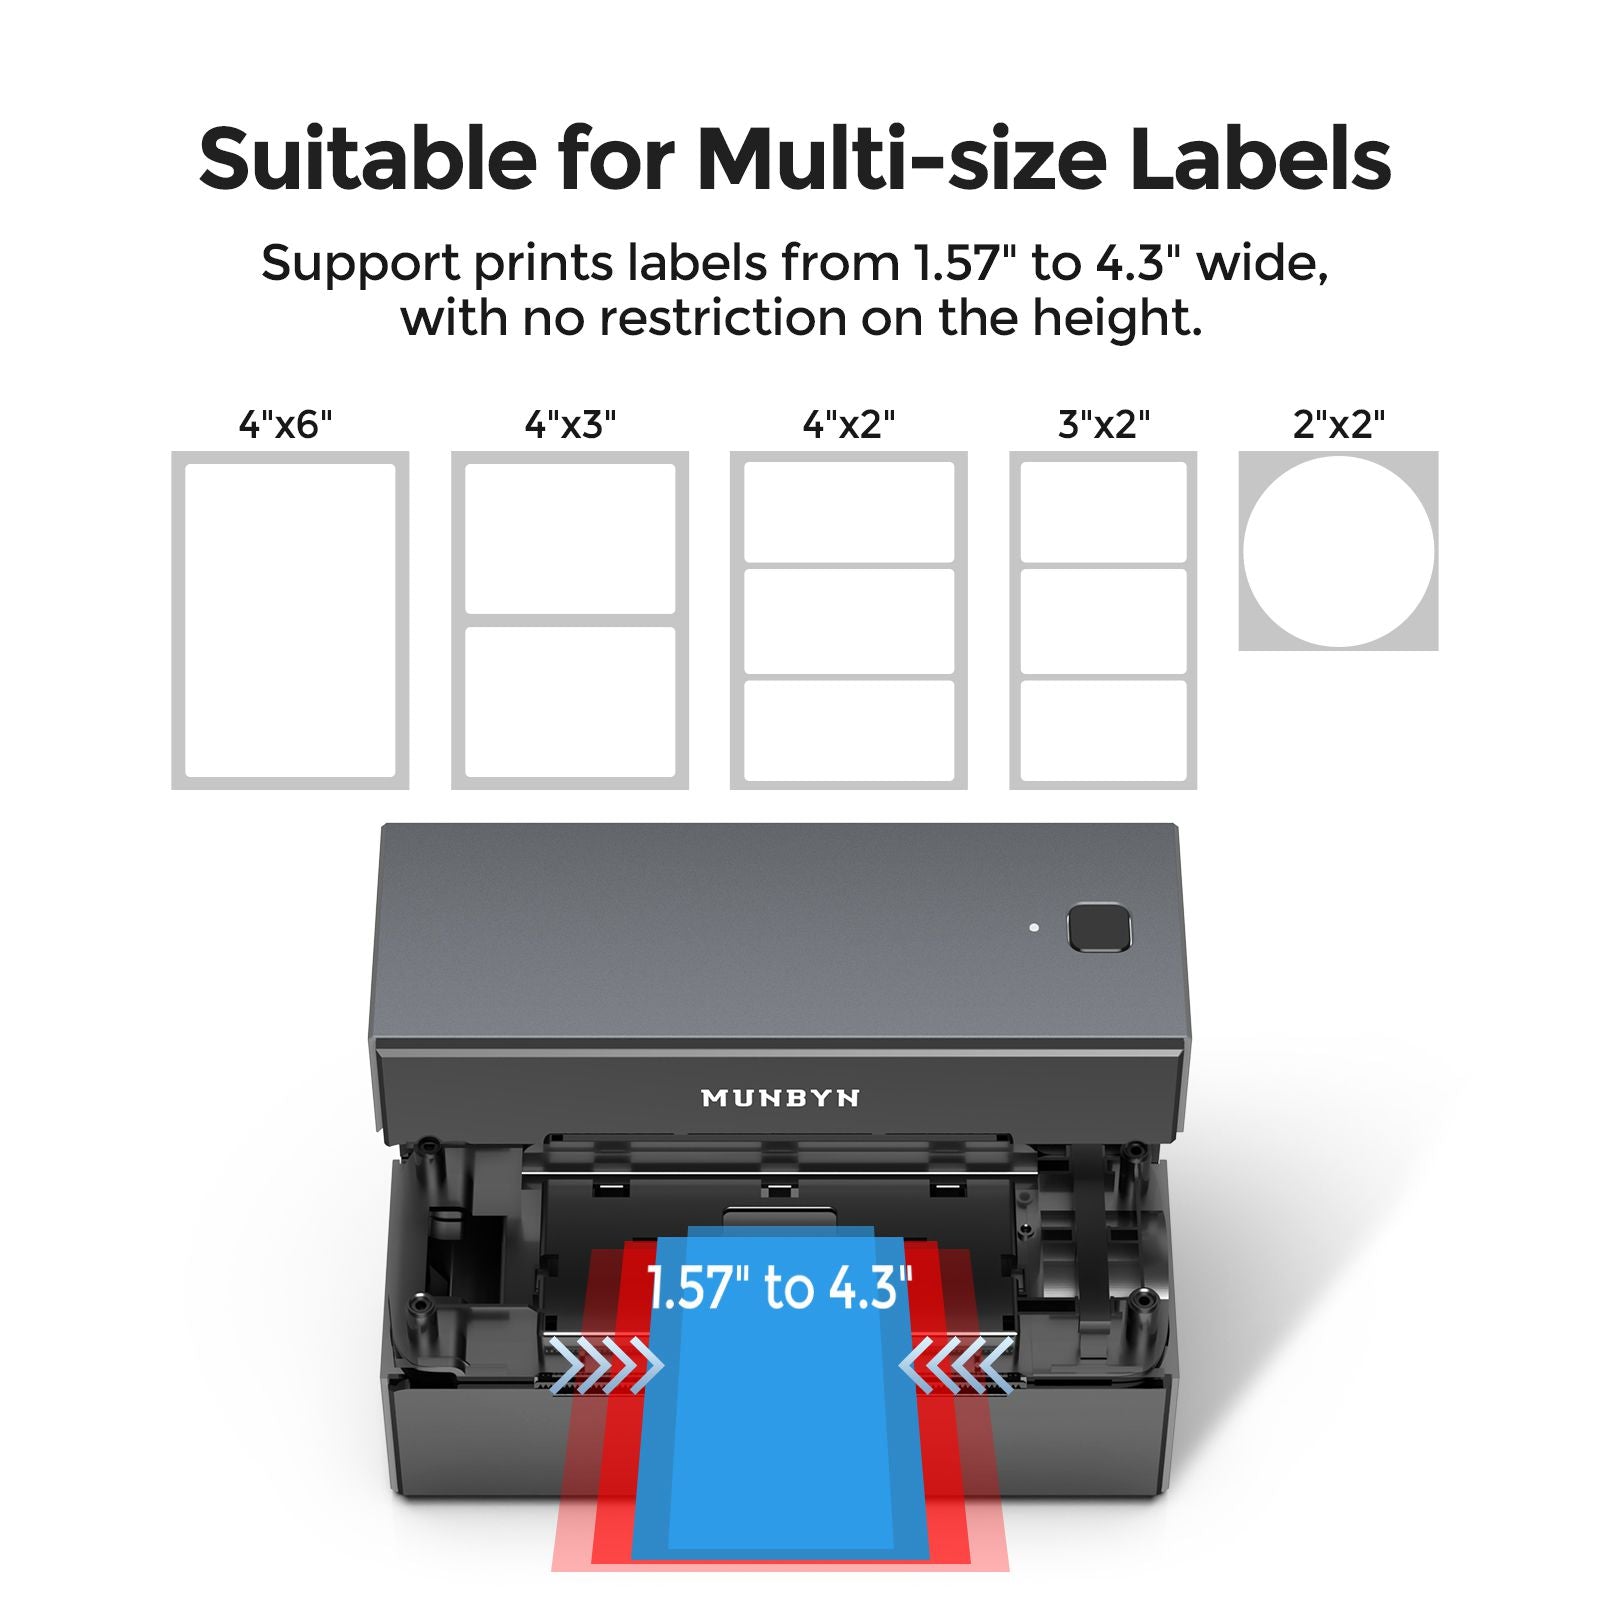 MUNBYN® RealWriter 129 Bluetooth Label Printer | MUNBYN CA